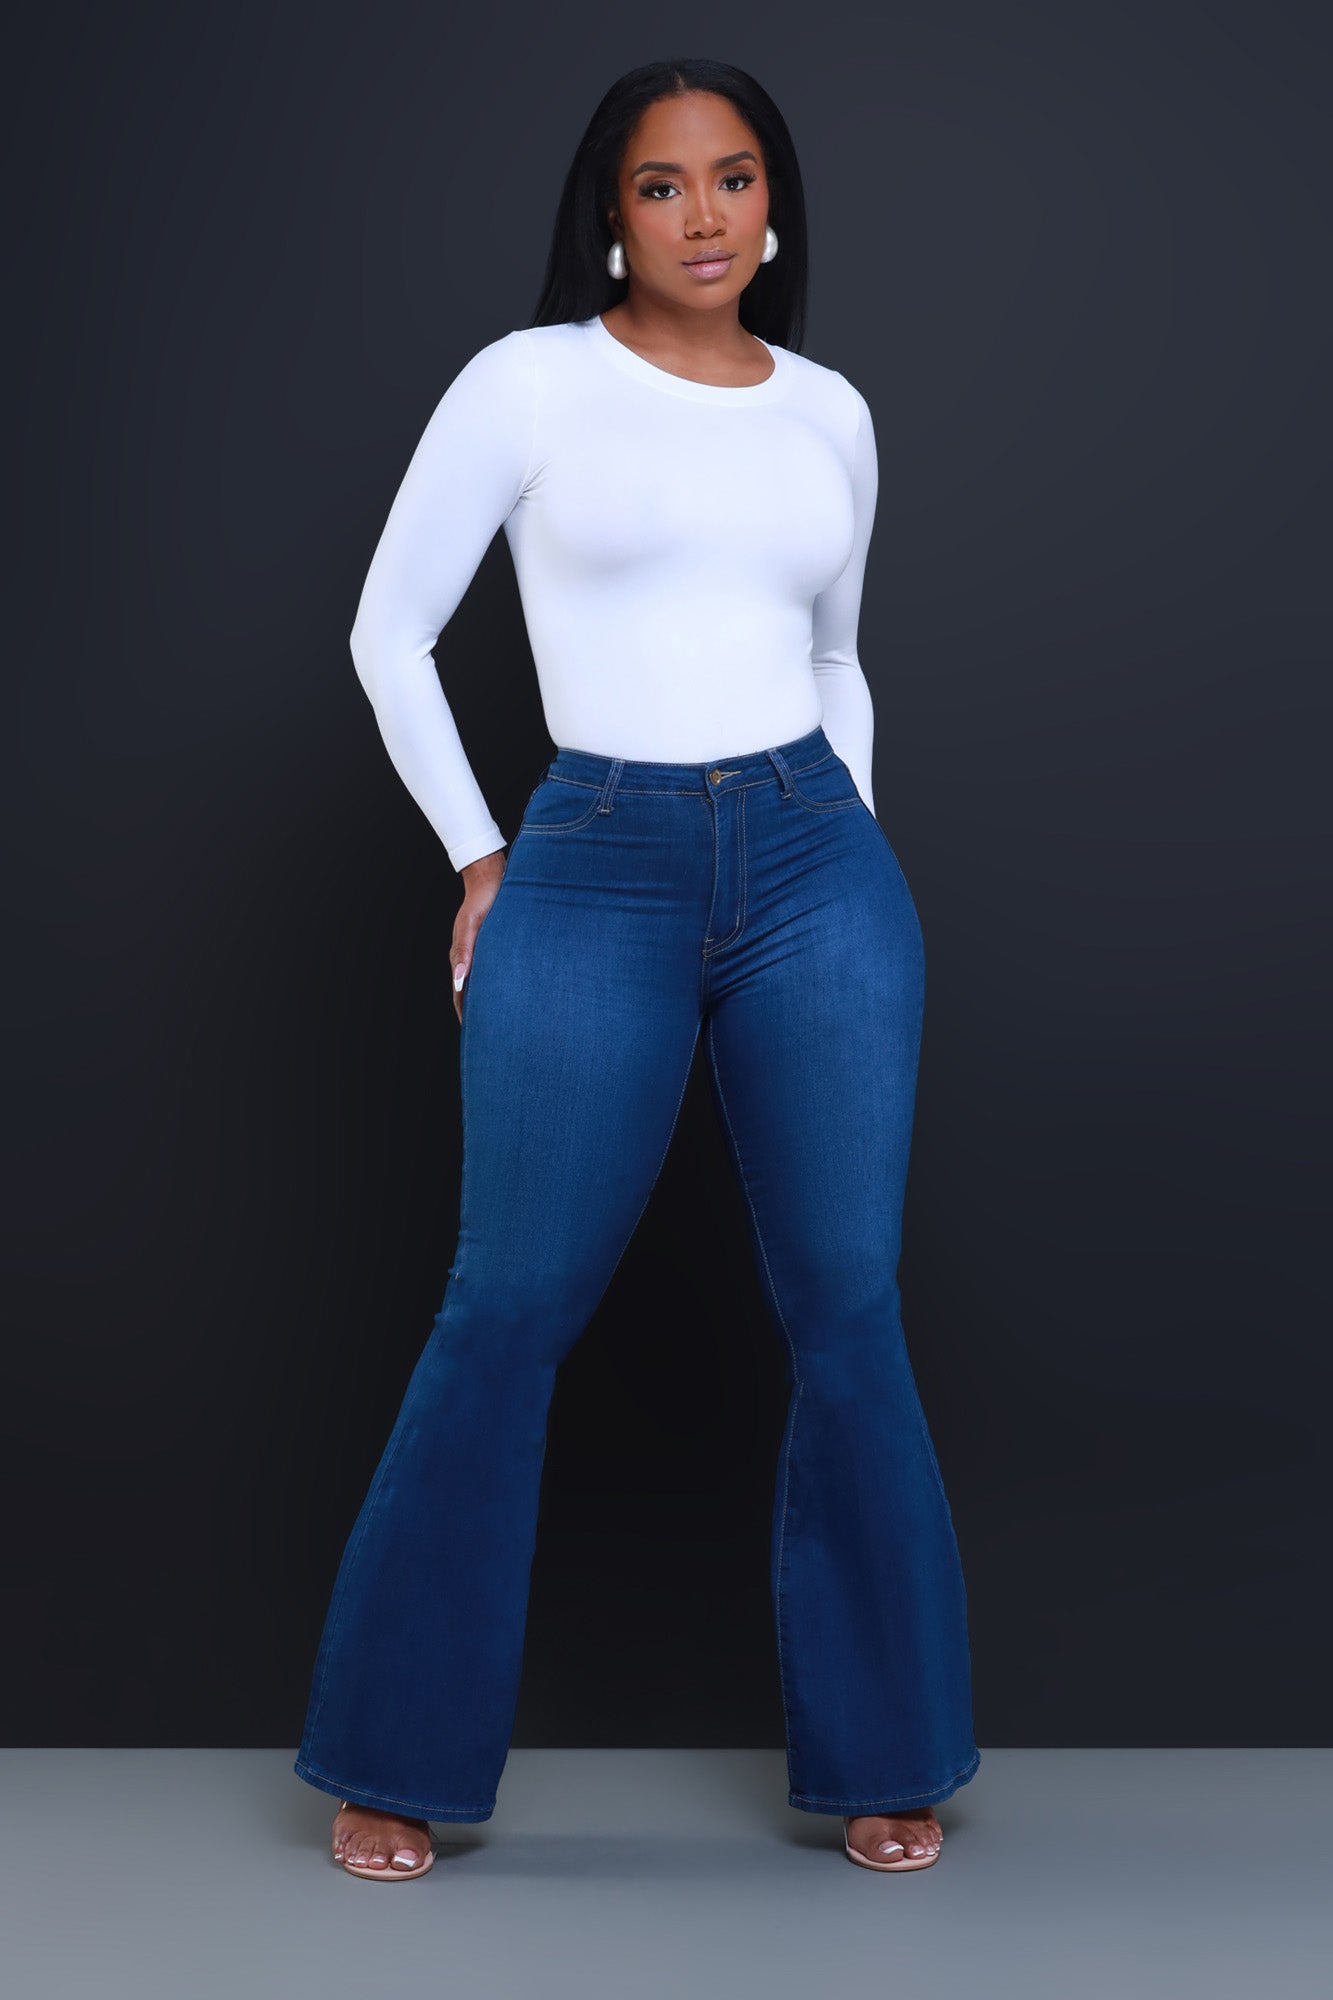 NWT Vibrant women high waist distress light blue flares jeans denim bell  bottoms